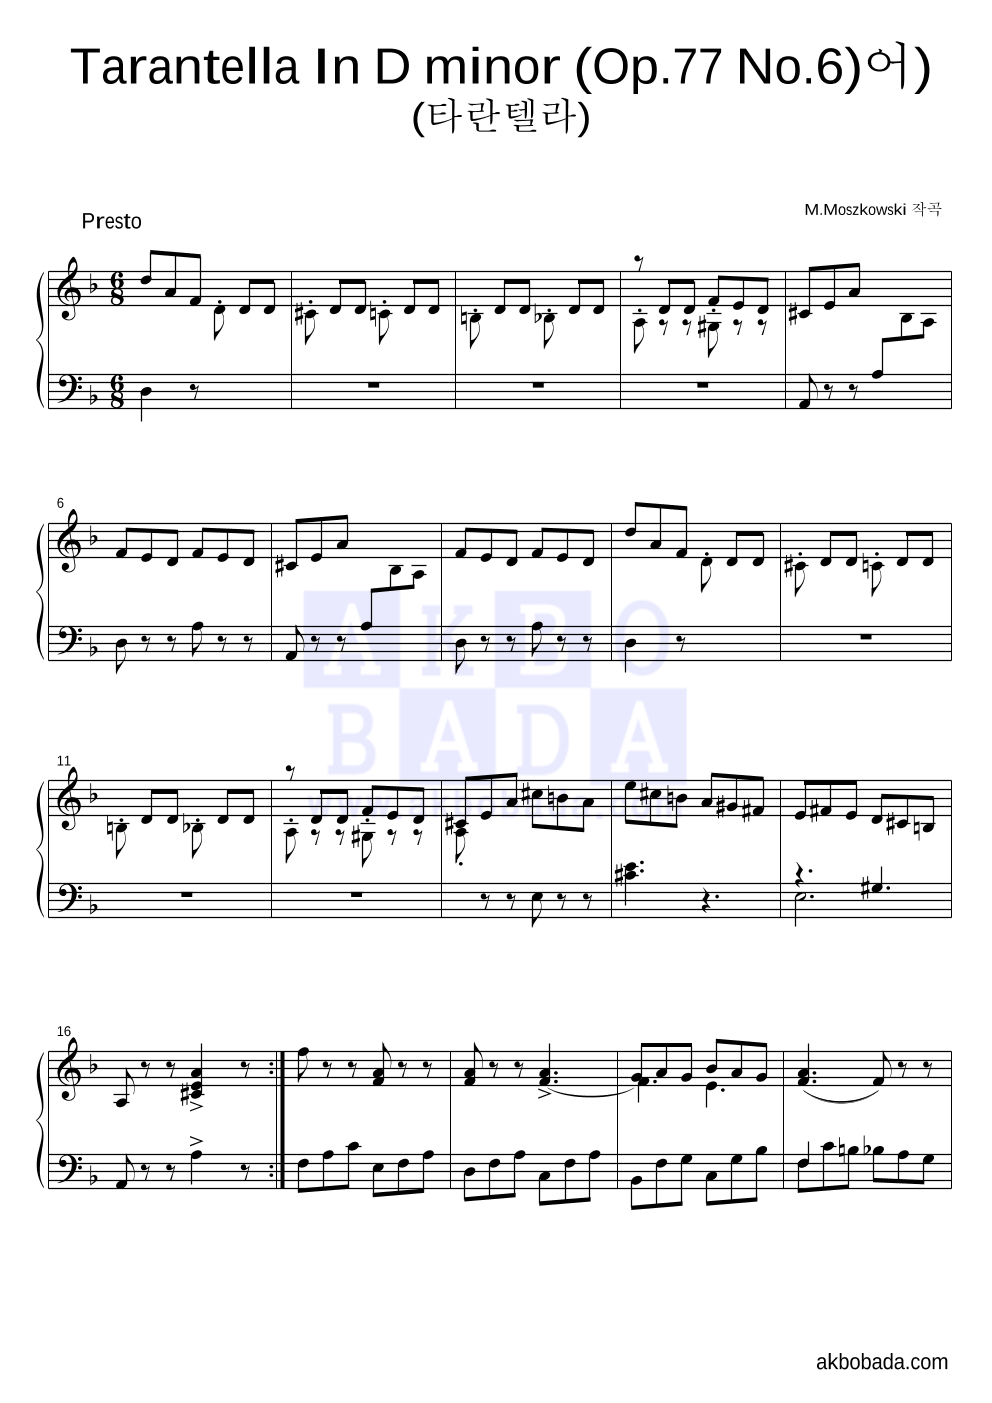 모슈코프스키 - Tarantella In D minor (Op.77 No.6) 피아노 2단 악보 